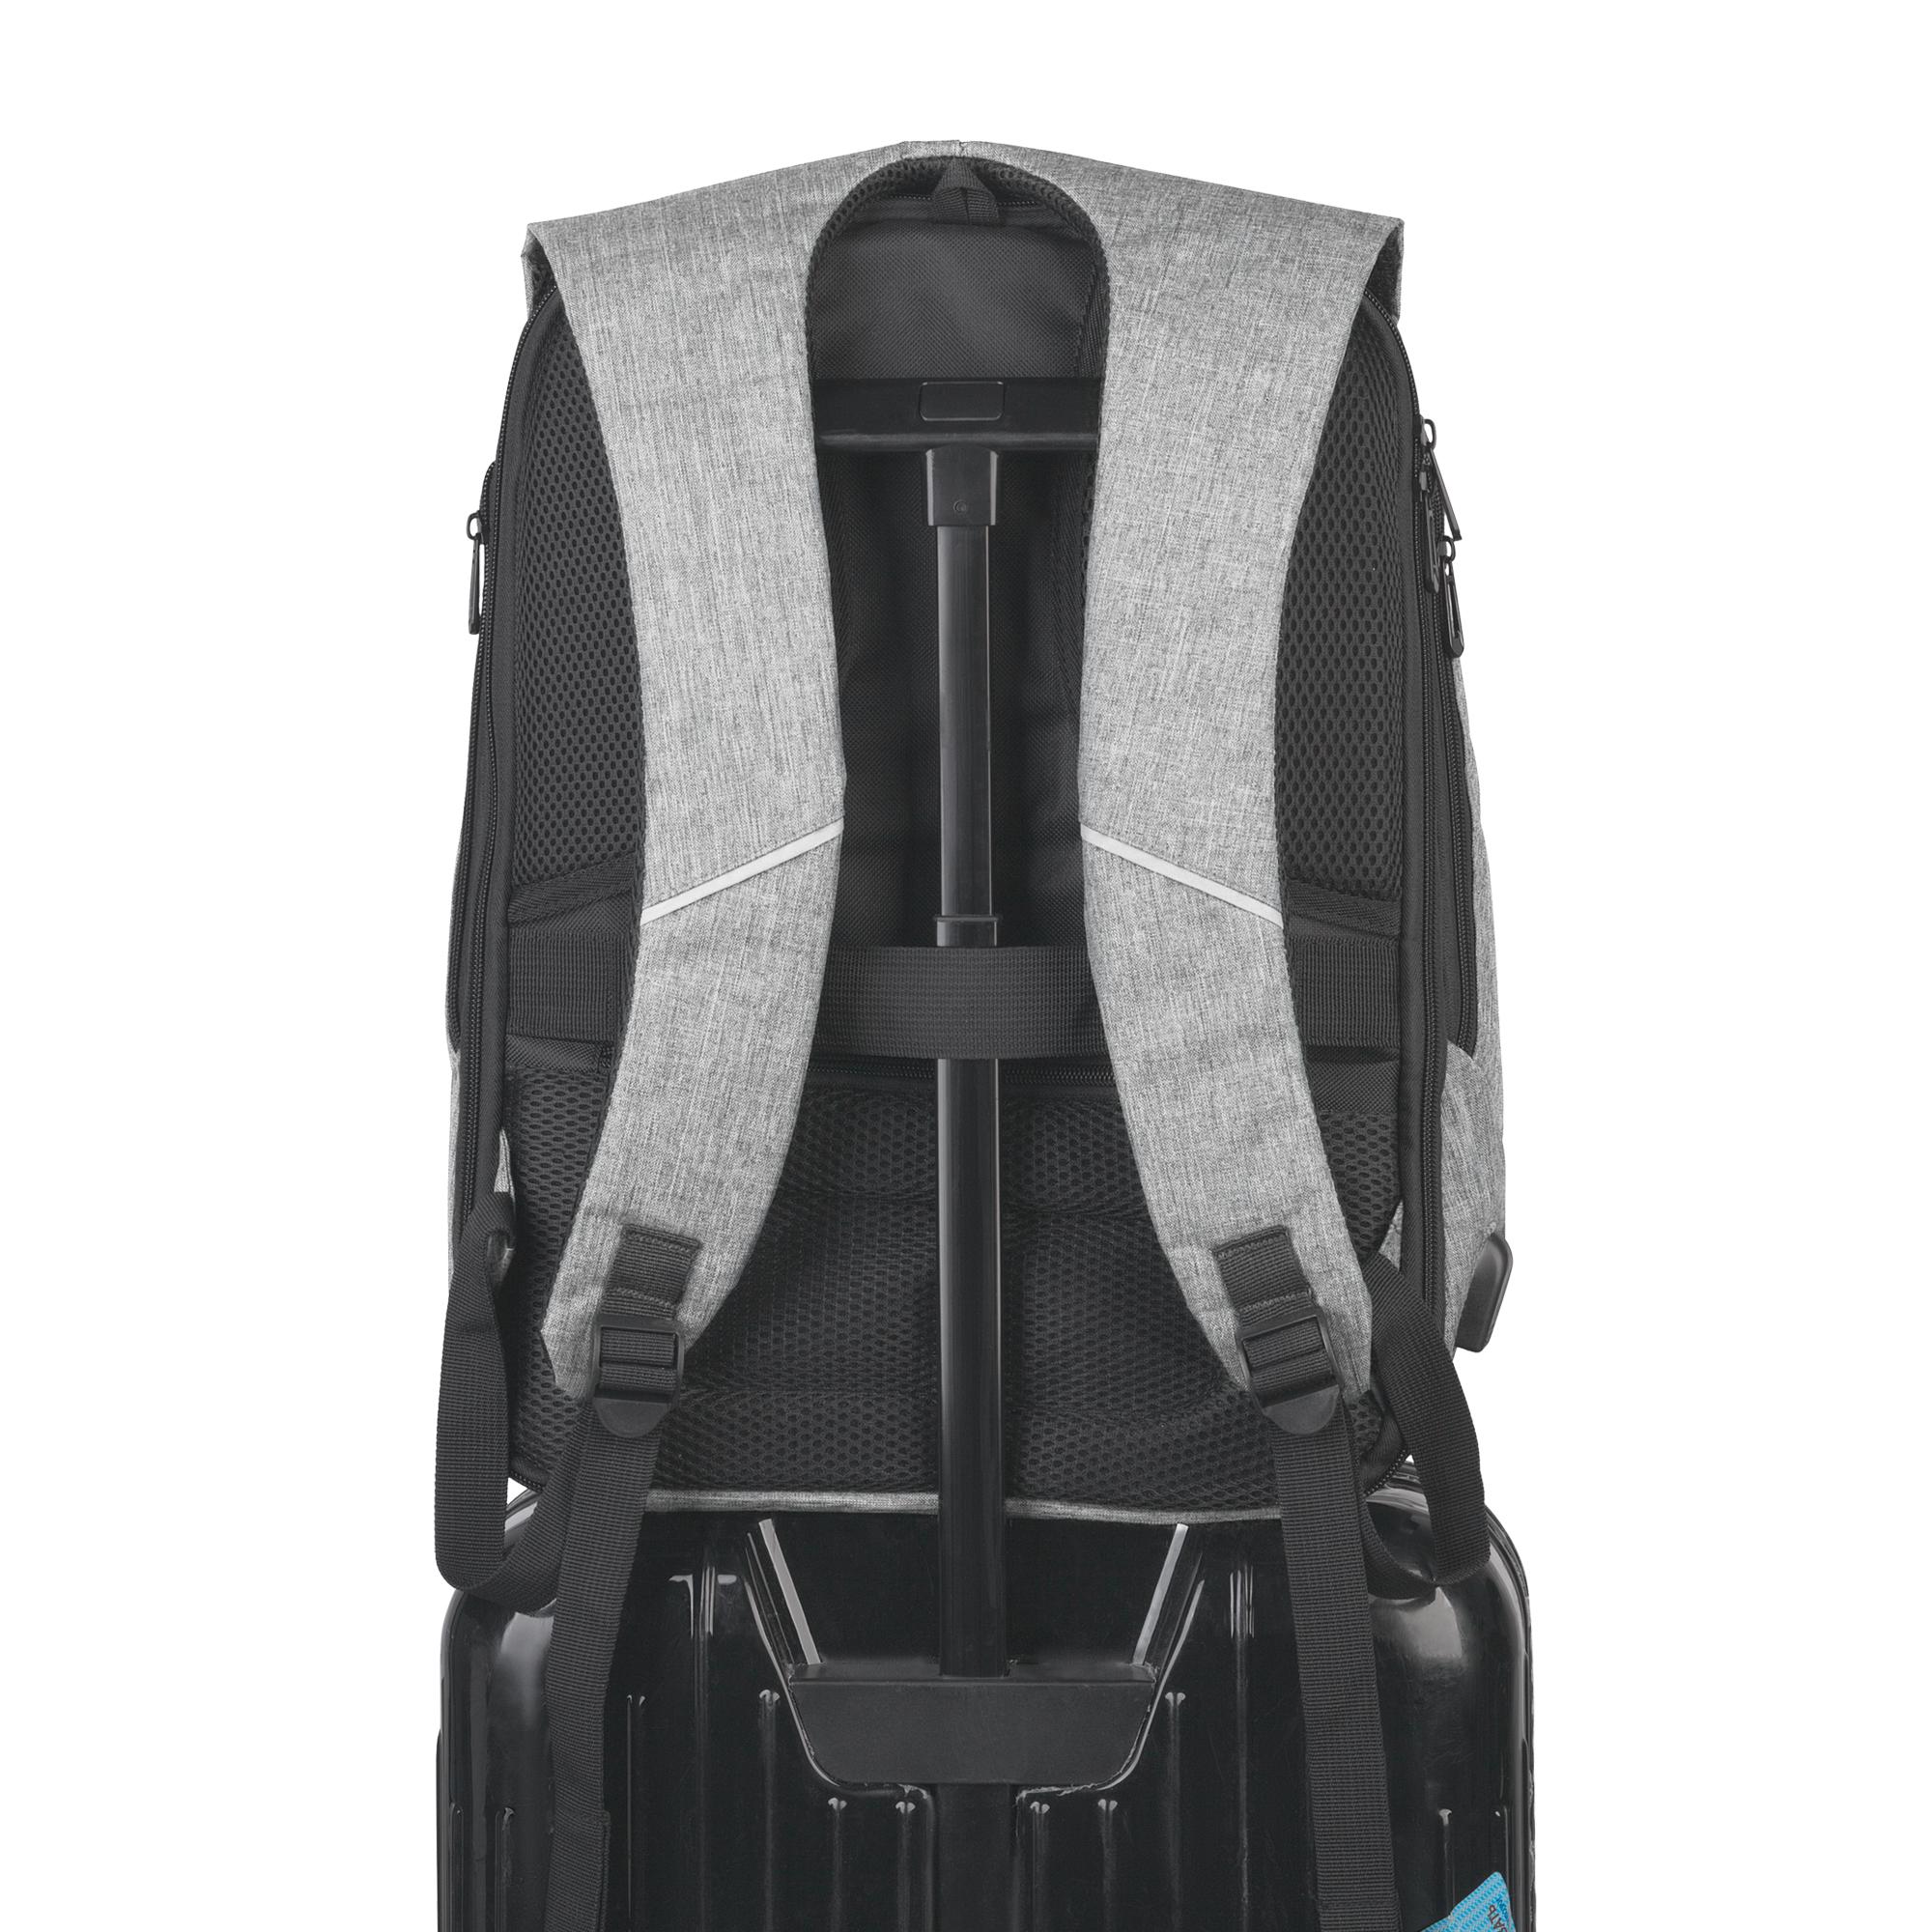 Рюкзак "Holiday" с USB разъемом и защитой от кражи, цвет серый с черным, фото 4